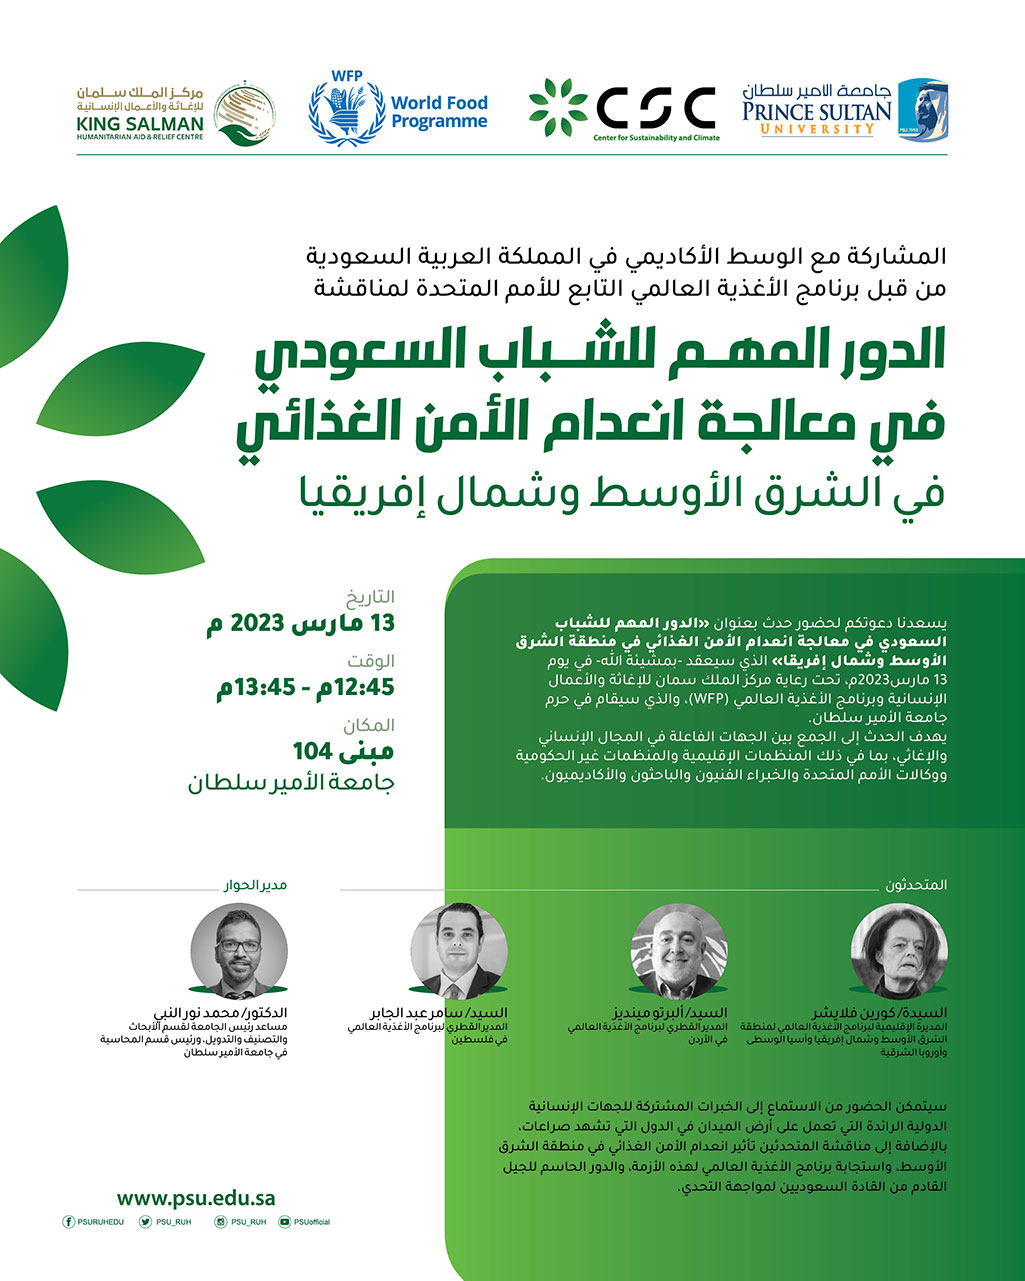 المشاركة مع الأكاديمية في المملكة العربية السعودية لبرنامج الأغذية العالمي التابع للأمم المتحدة لمناقشة "الدور الحاسم للشباب السعودي في معالجة انعدام الأمن الغذائي في الاوطان العربية "